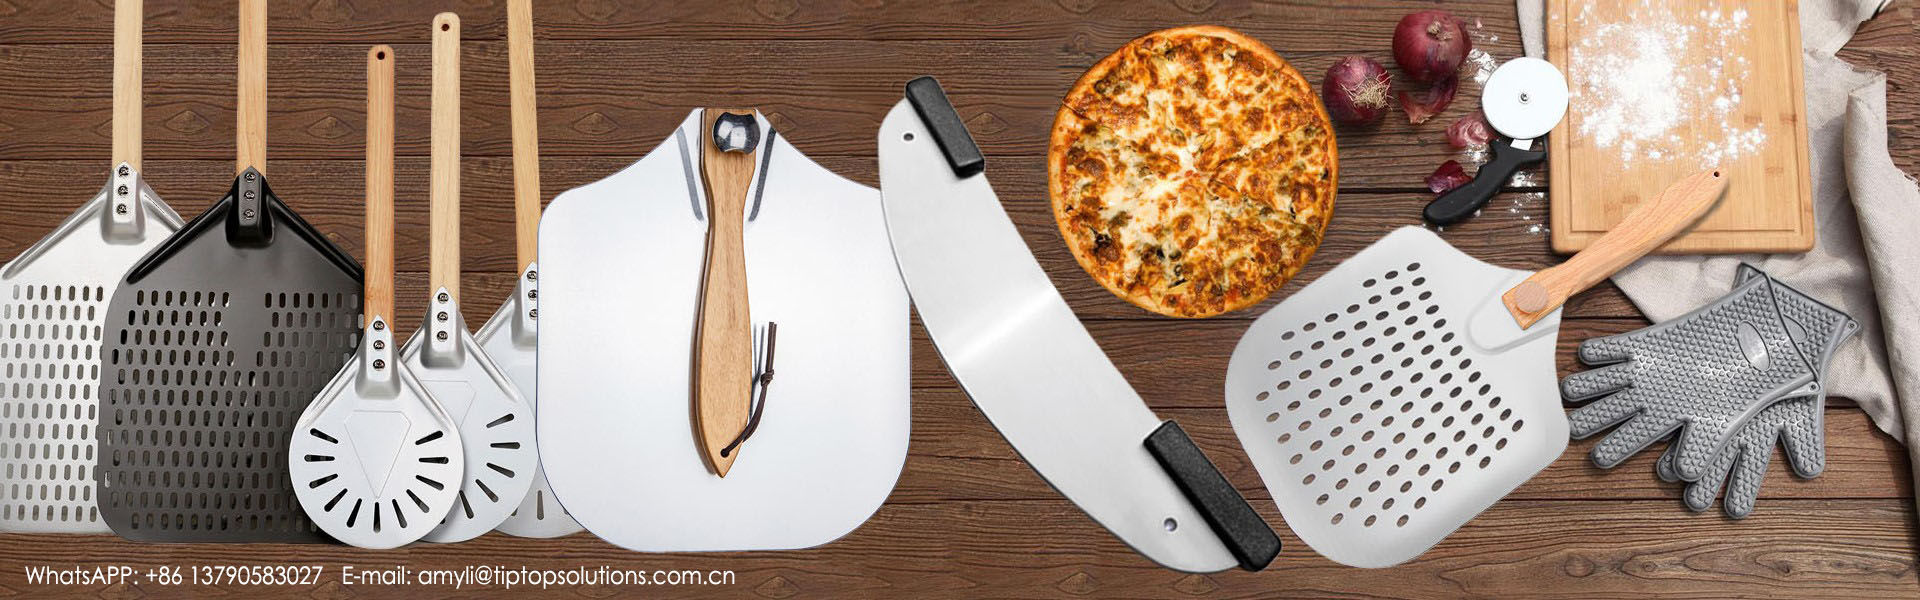 피자 껍질, 피자 커터, 오븐 도구,TIPTOP SOLUTIONS CO.,LIMITED